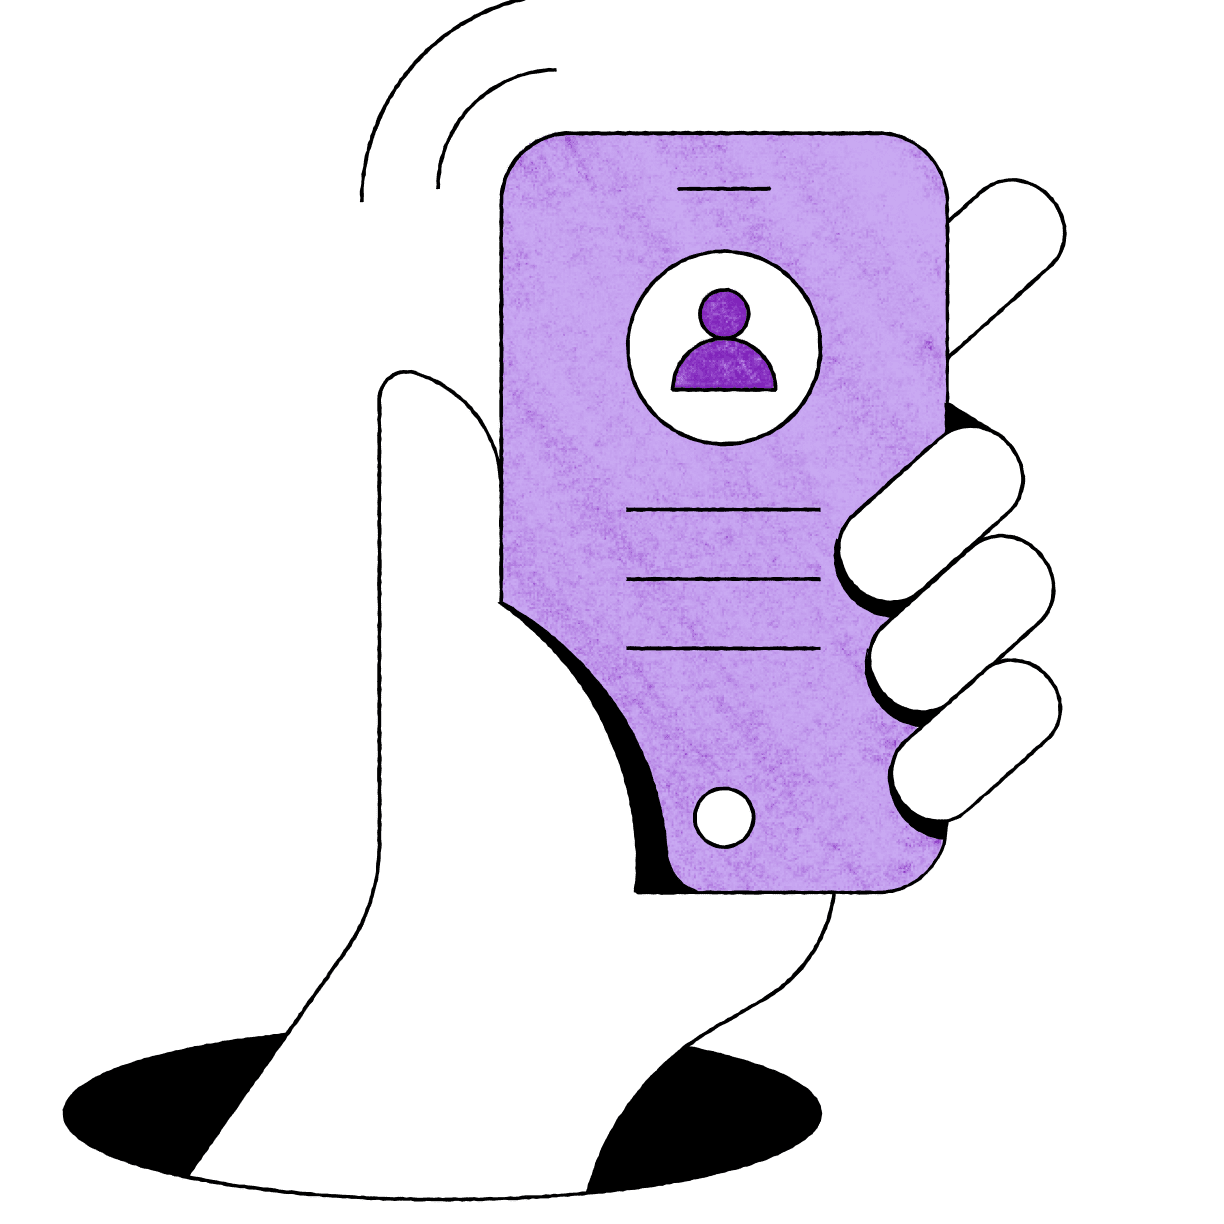 Ilustración de una mano que levanta y sujeta un teléfono móvil.